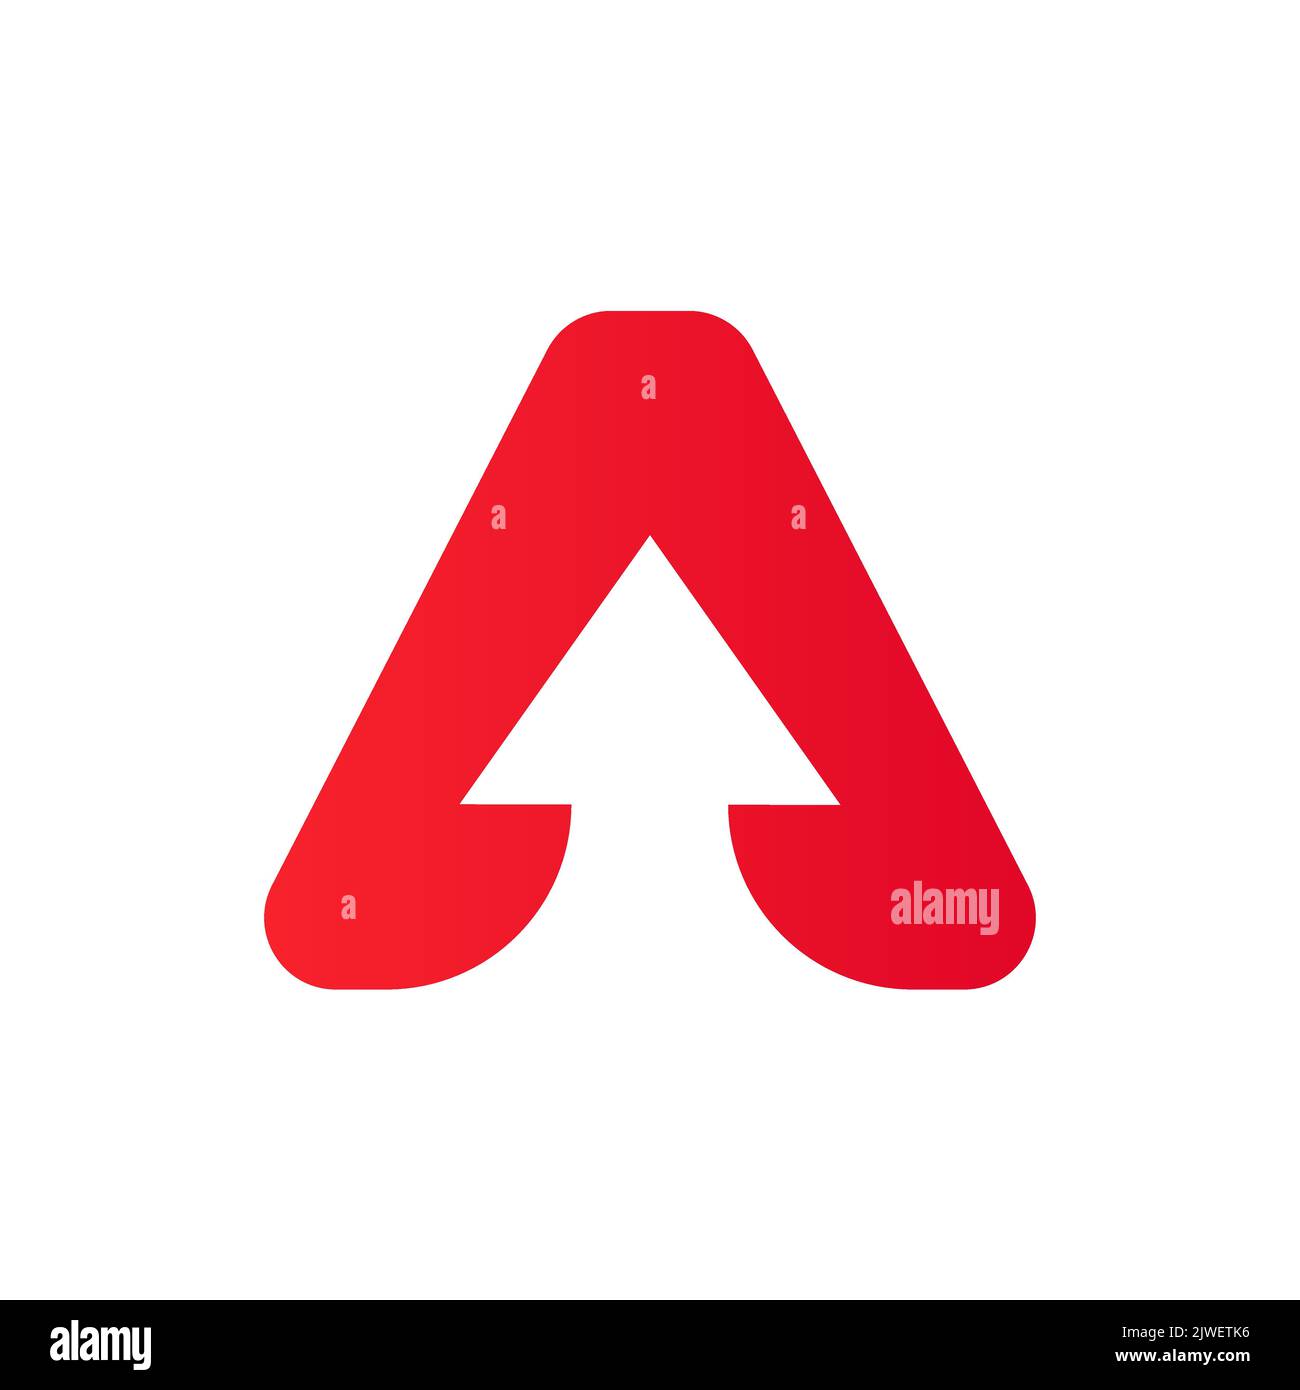 Lettre A logo financier avec logo de croissance. Elément comptable, modèle de vecteur de symbole d'investissement financier Illustration de Vecteur